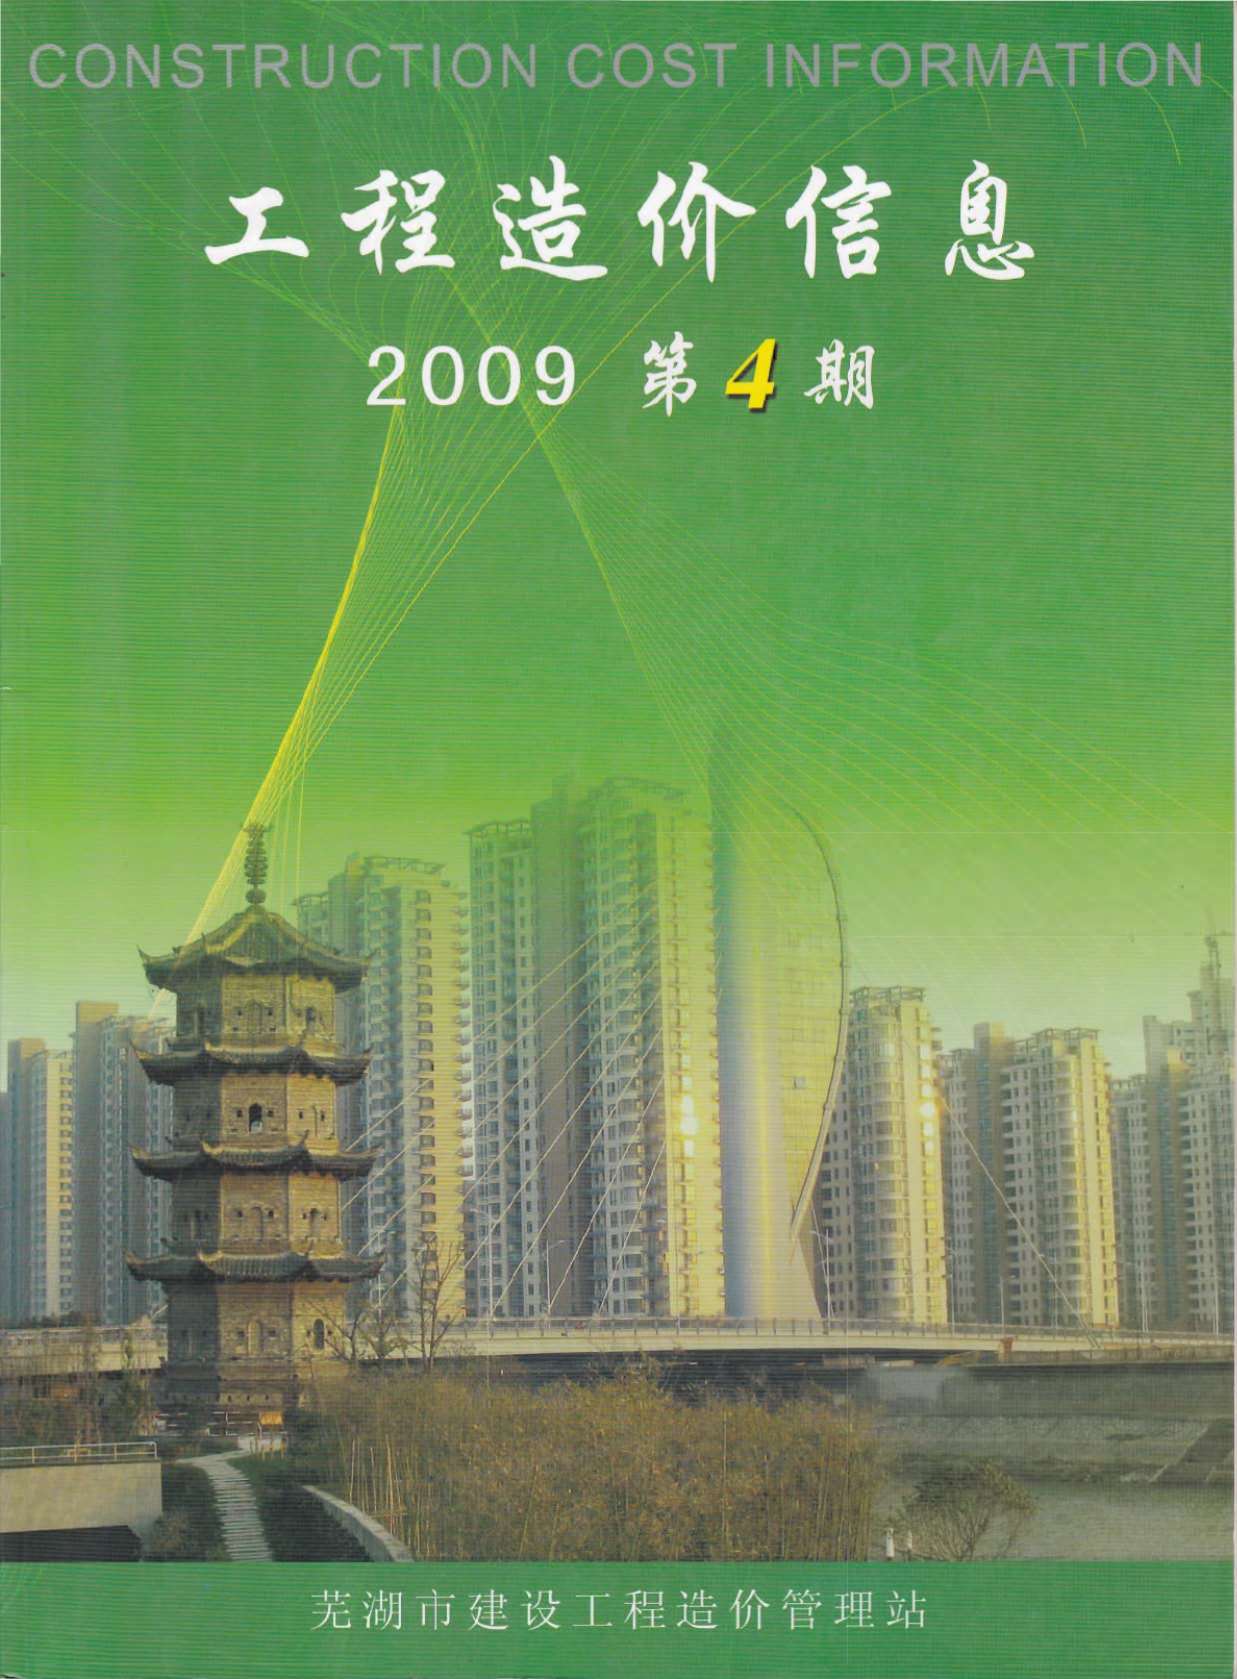 芜湖市2009年4月建设工程造价信息